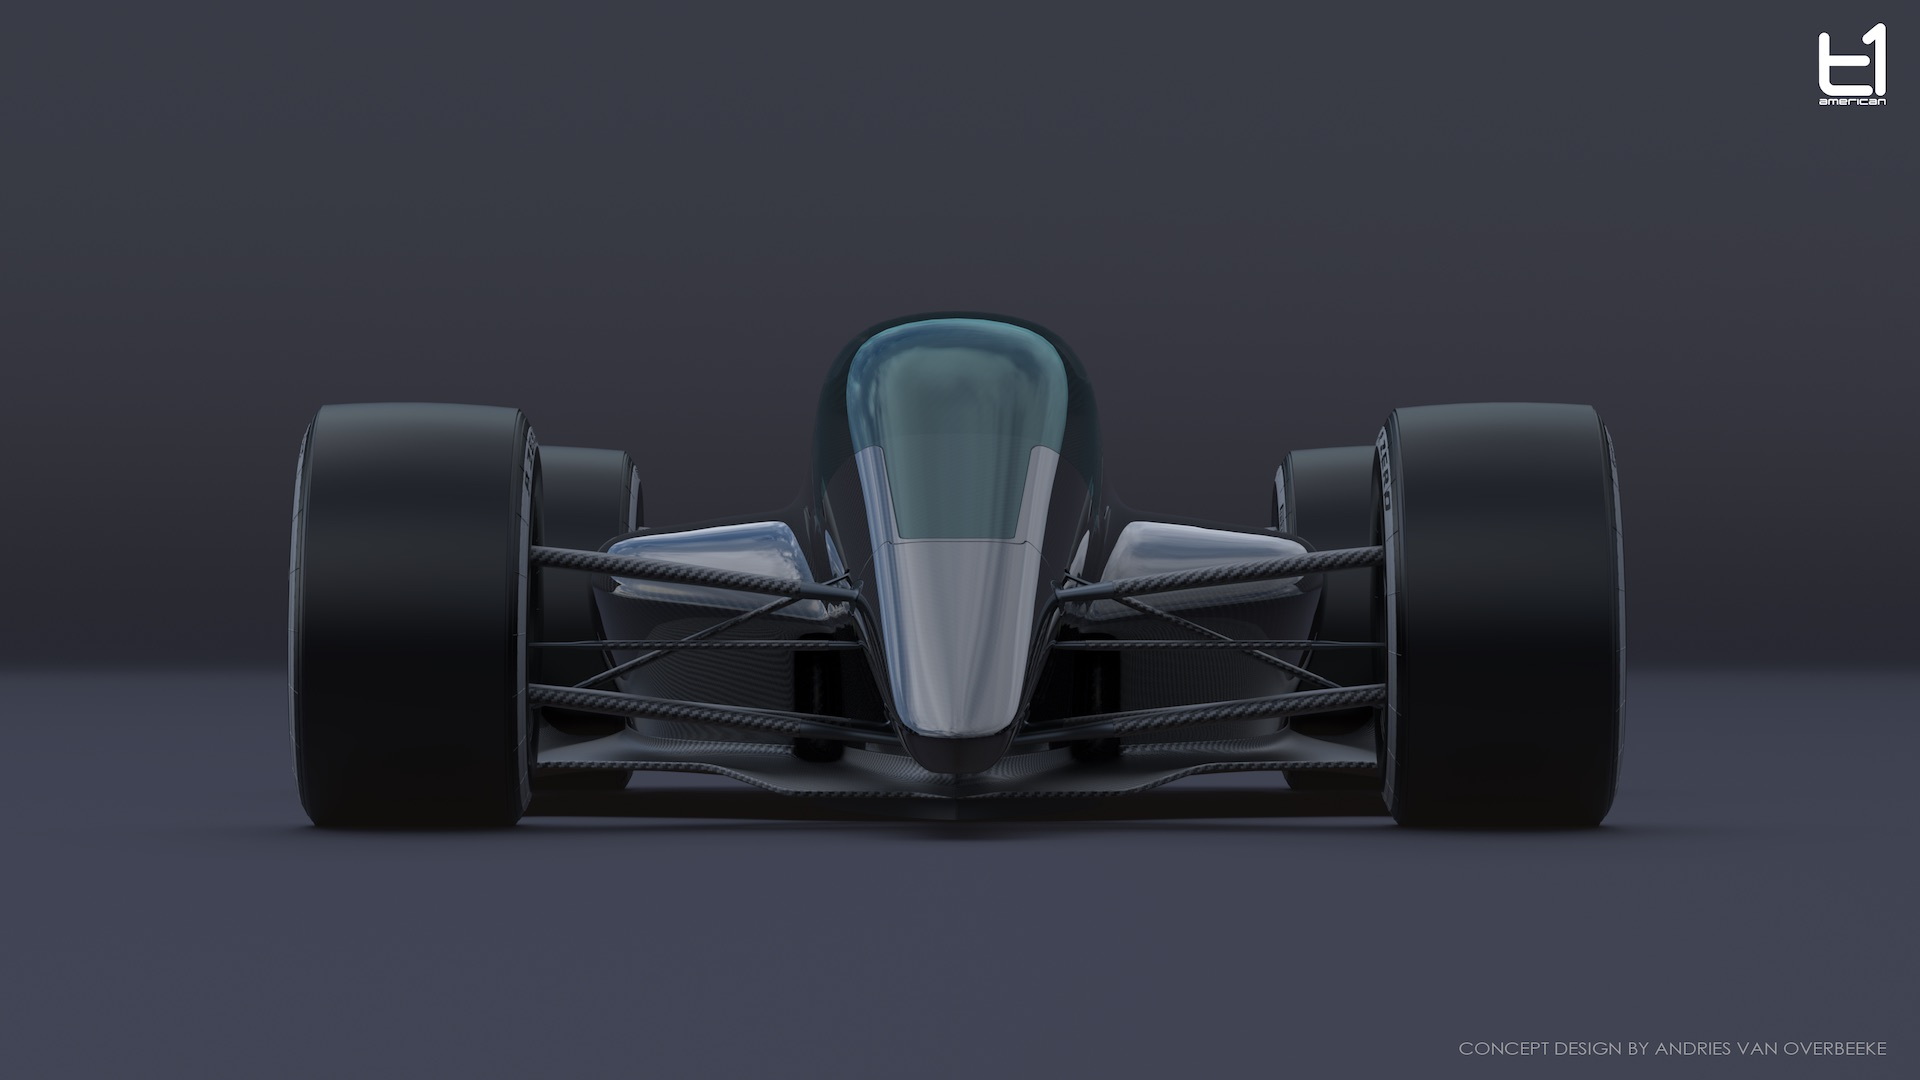 T1 Turbine concept race car